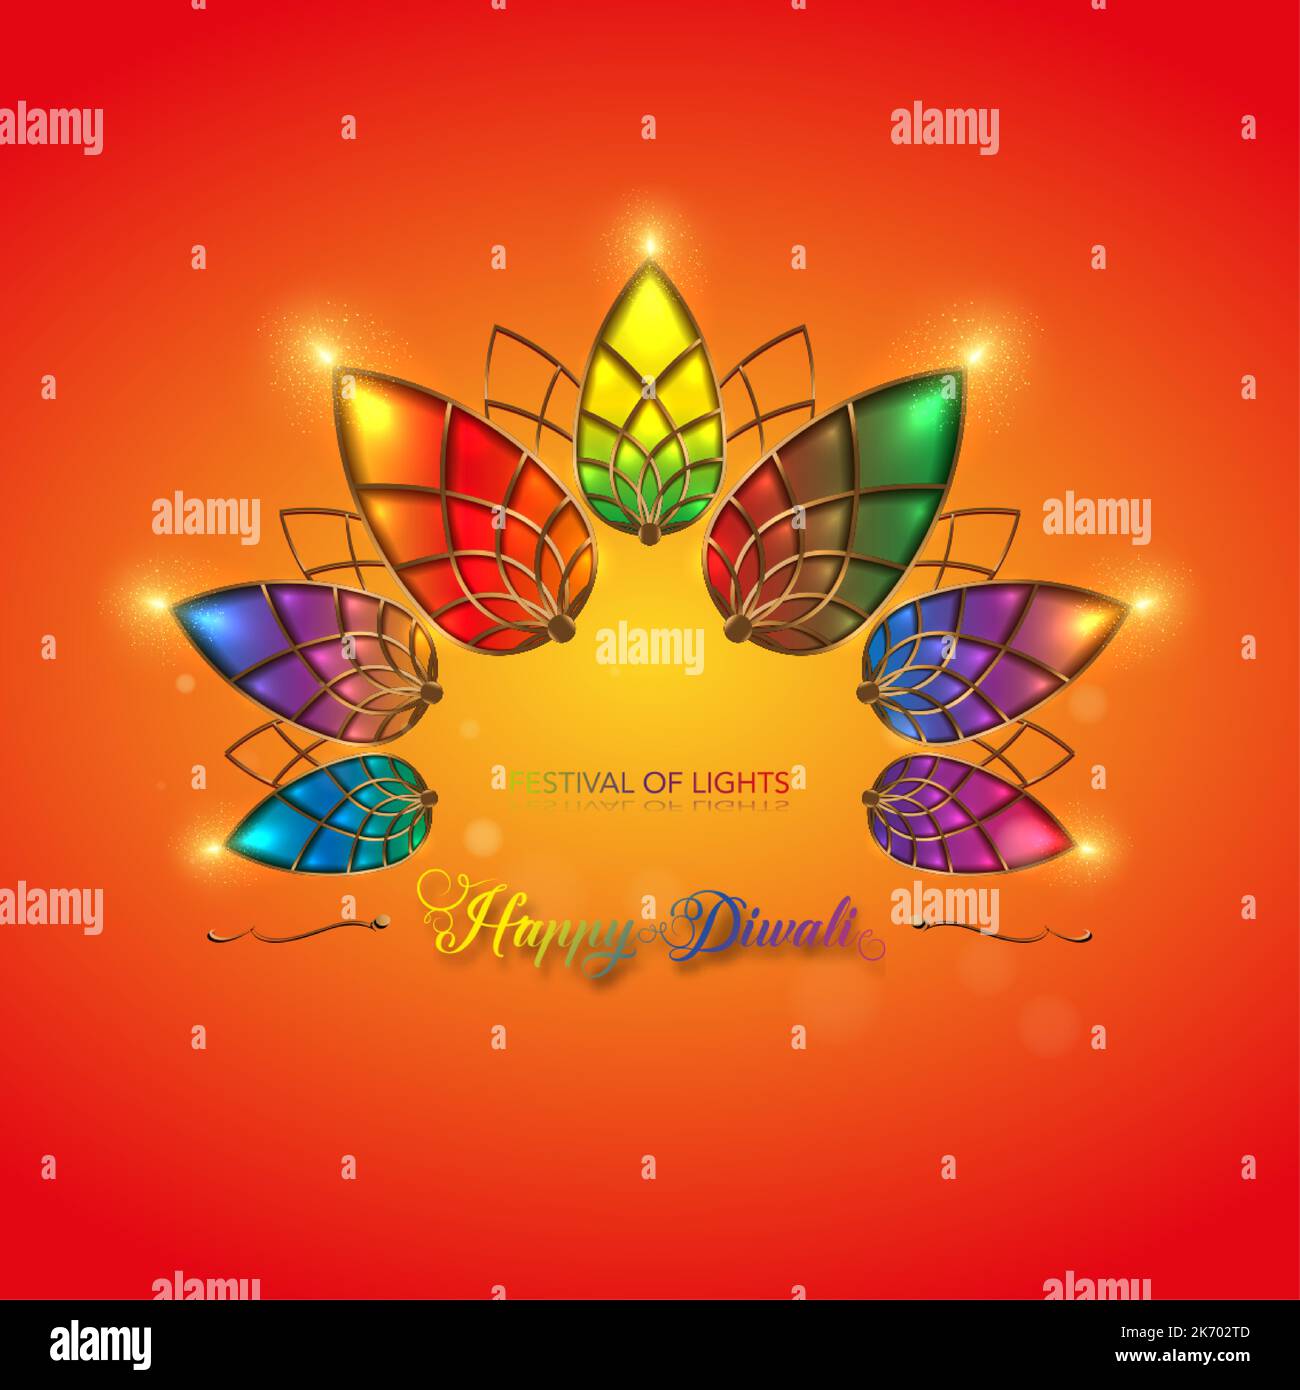 Happy Diwali Festival of Lights India Celebration modèle coloré. Bannière graphique des lampes à huile Indian Lotus Diya, couleurs de conception moderne Illustration de Vecteur